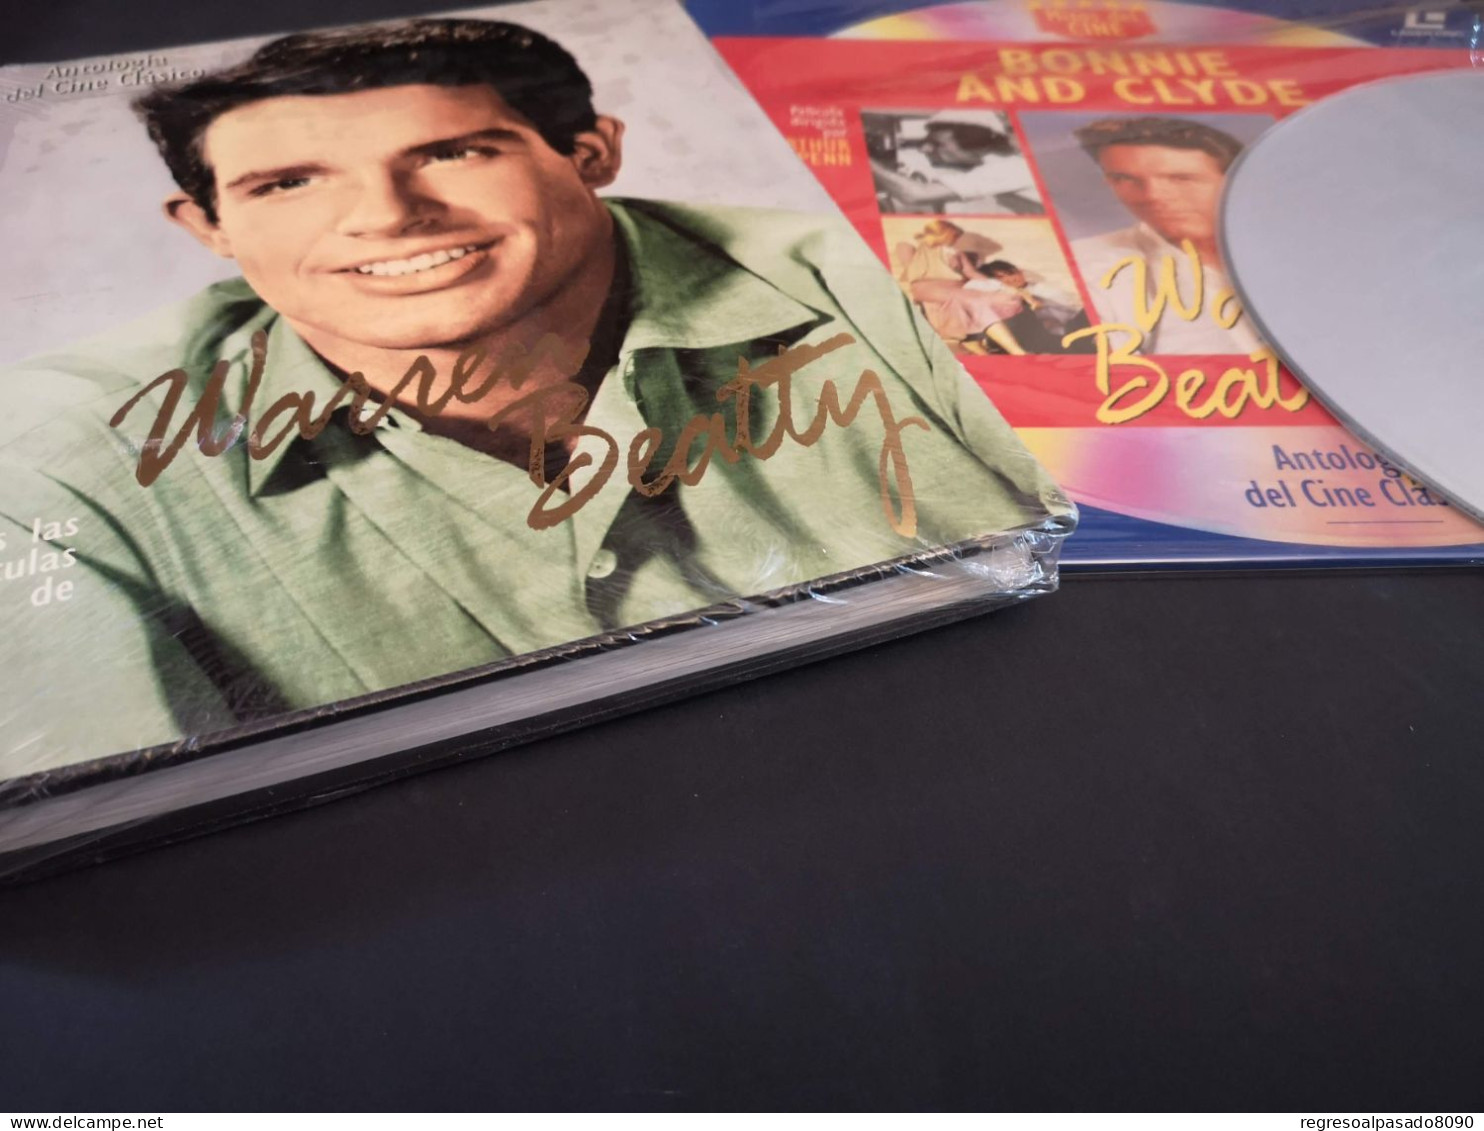 Warren Beatty Libro Y Película Laser Disc Laserdisc Bonnie And Clyde. Colección Mitos Del Cine Planeta Años 90 - Classici